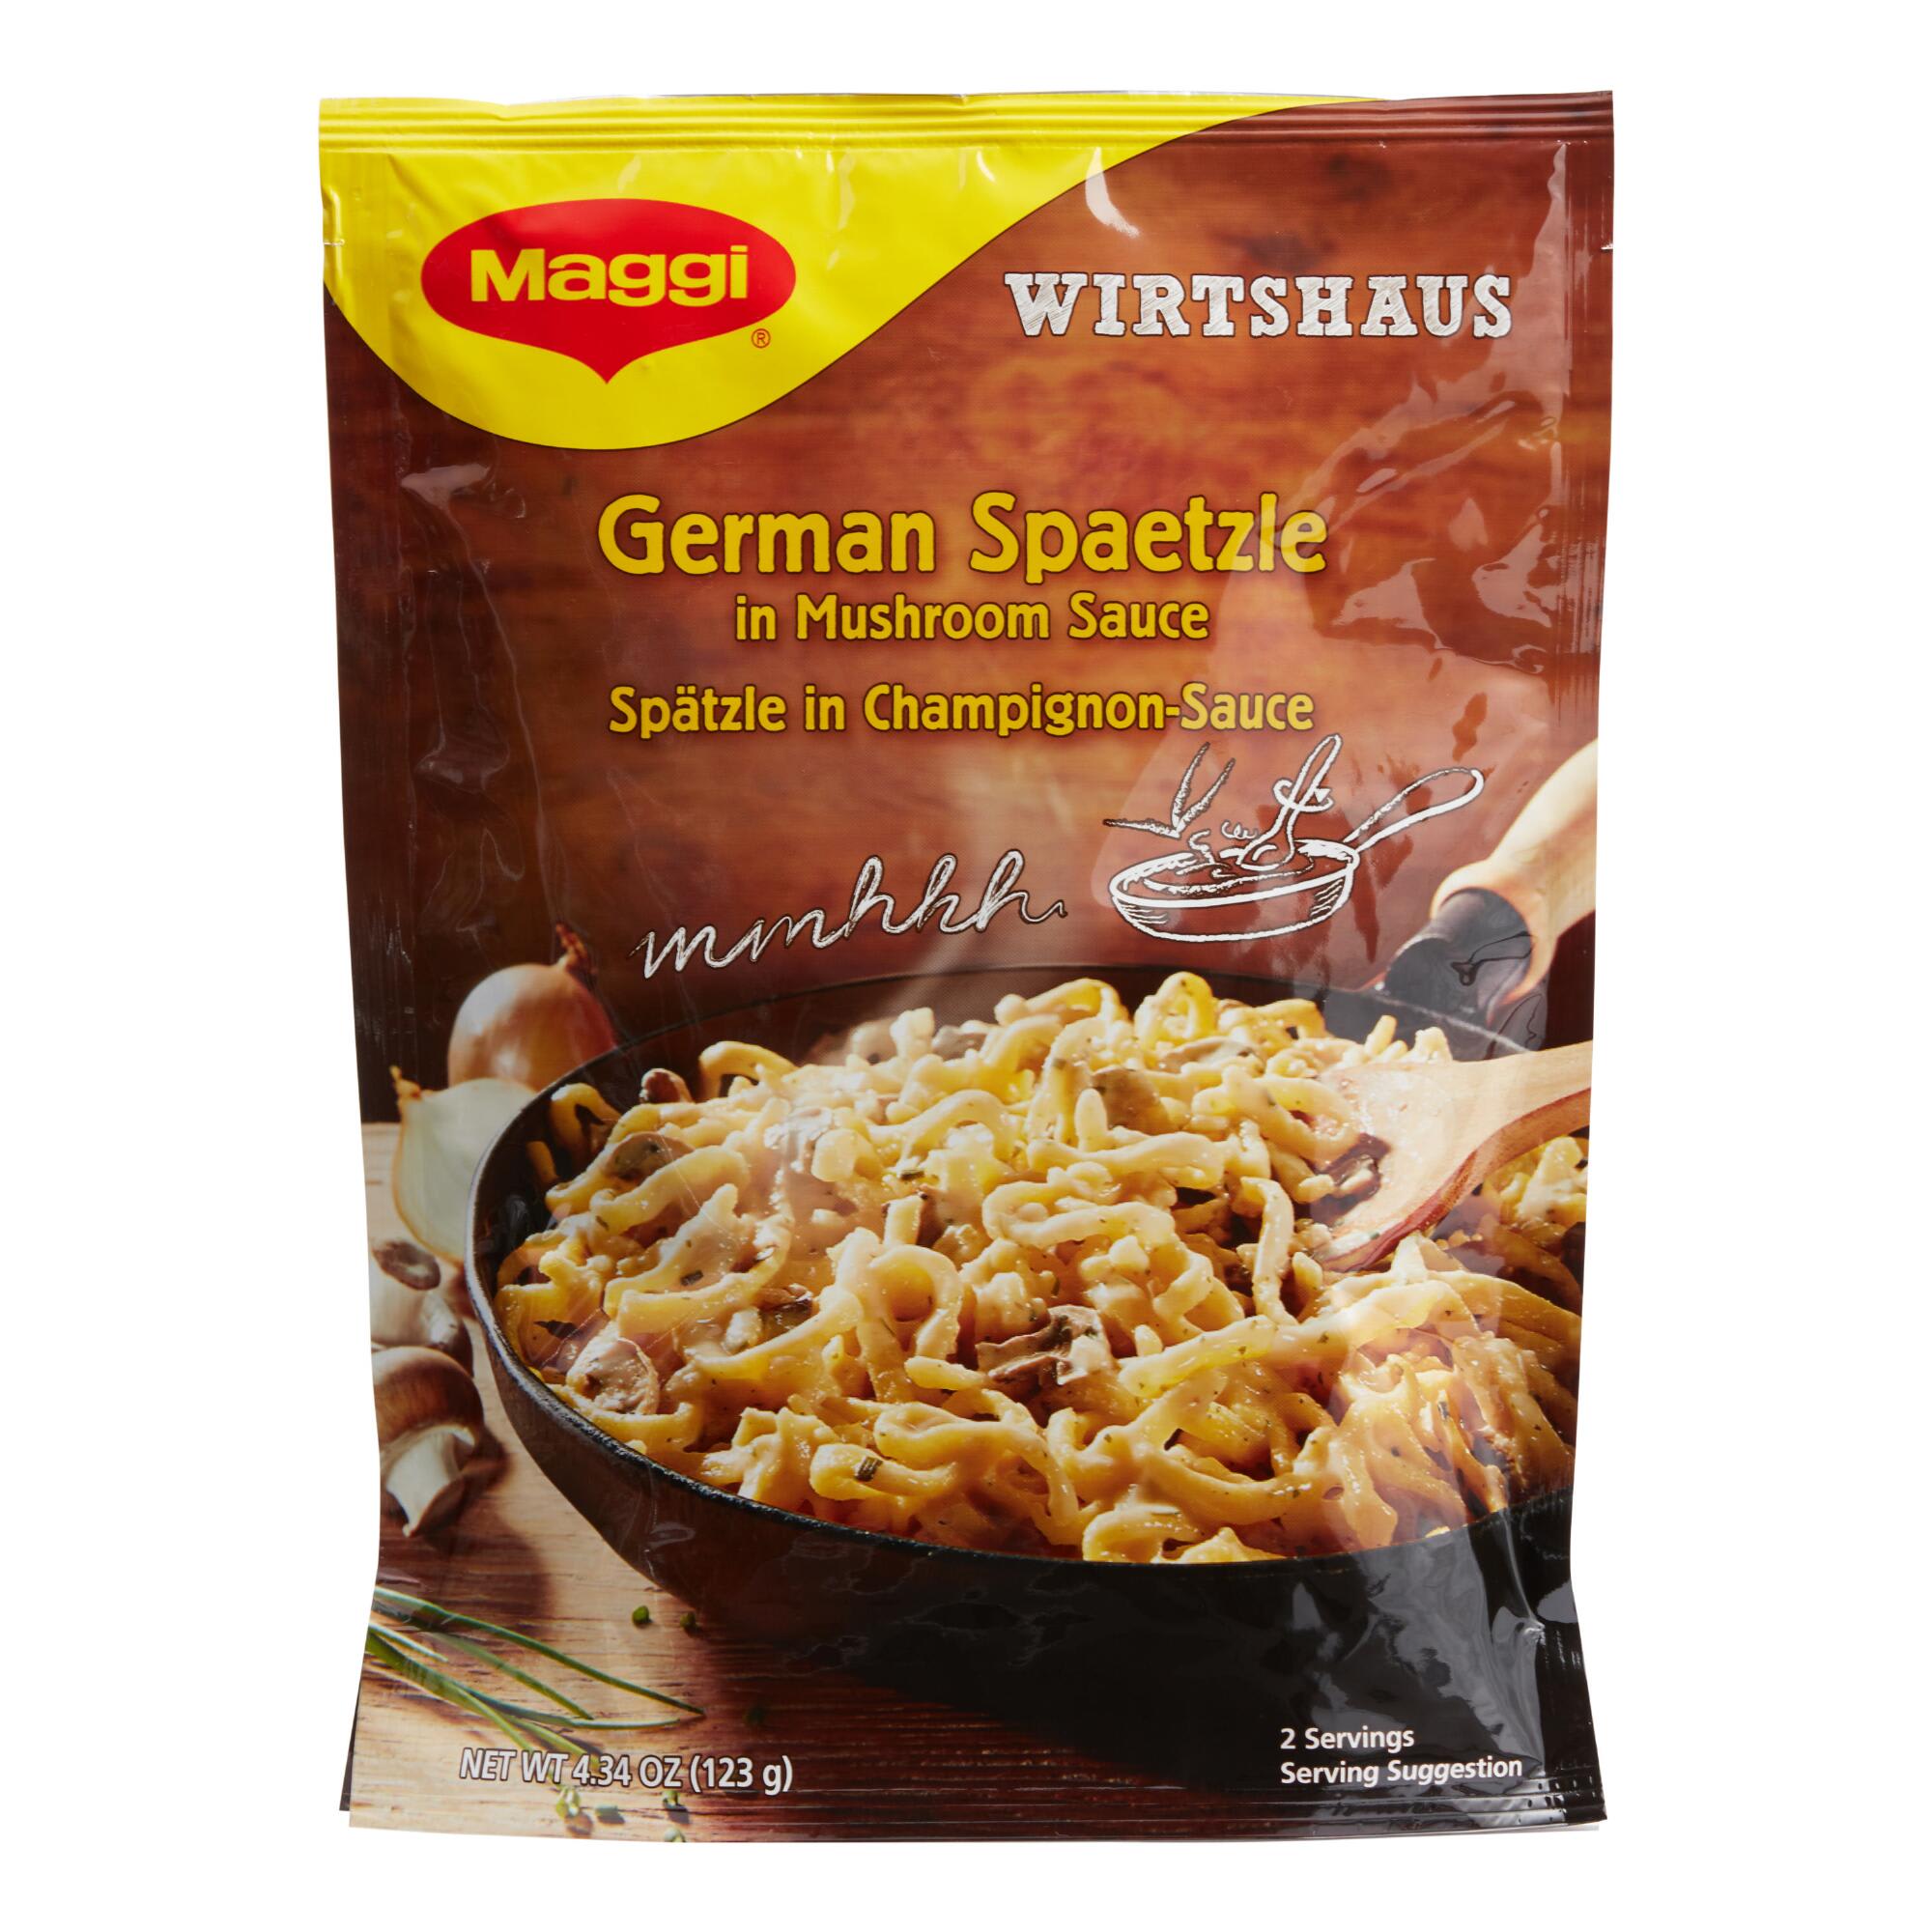 German Spaetzle with Mushroom Sauce - Jägerspätzle